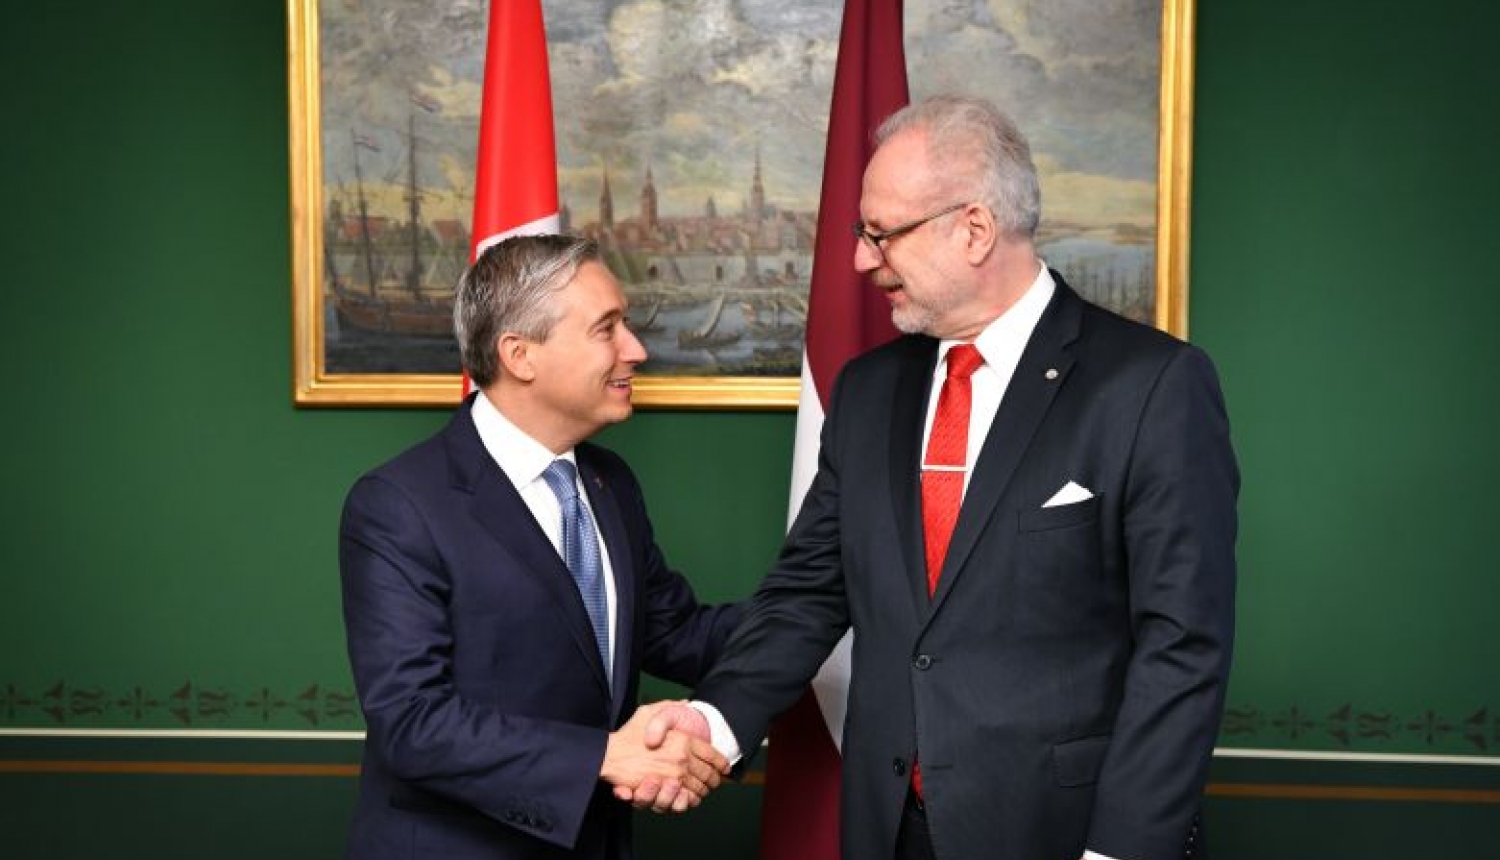 Valsts prezidents: Latviju un Kanādu vieno vislabākās iespējamās attiecības